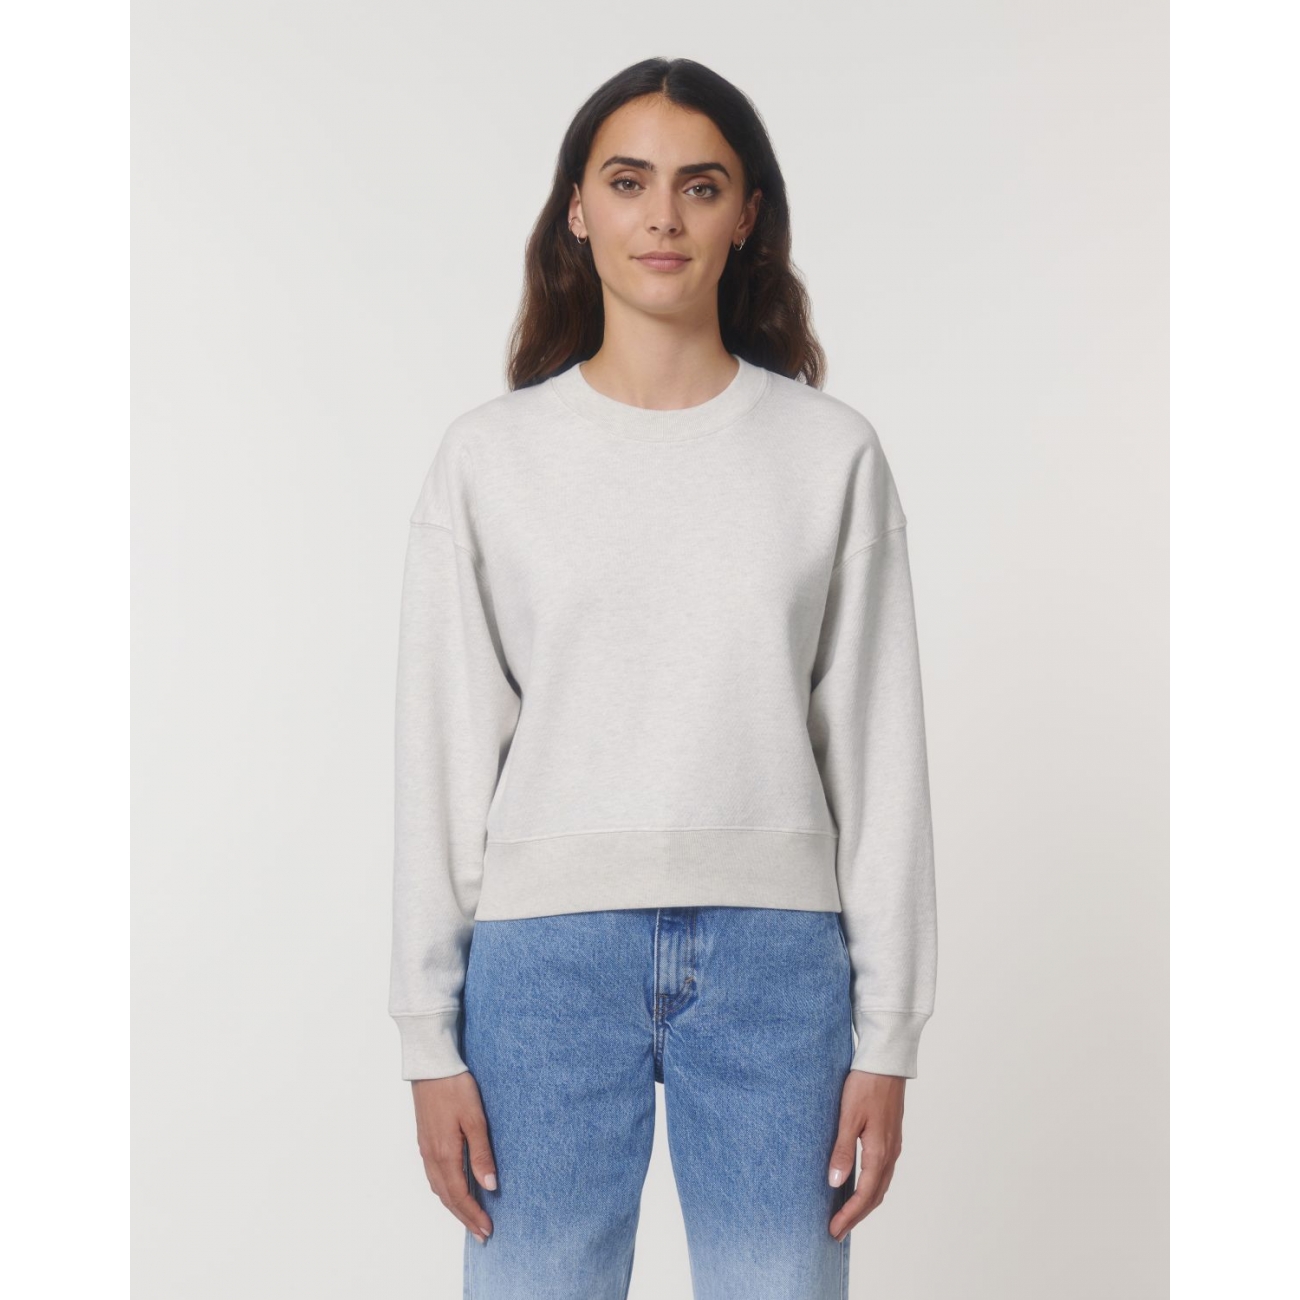 Sweat-shirt à capuche femme blanc en coton bio avec broderie 3D – CONNECTED  Streetwear